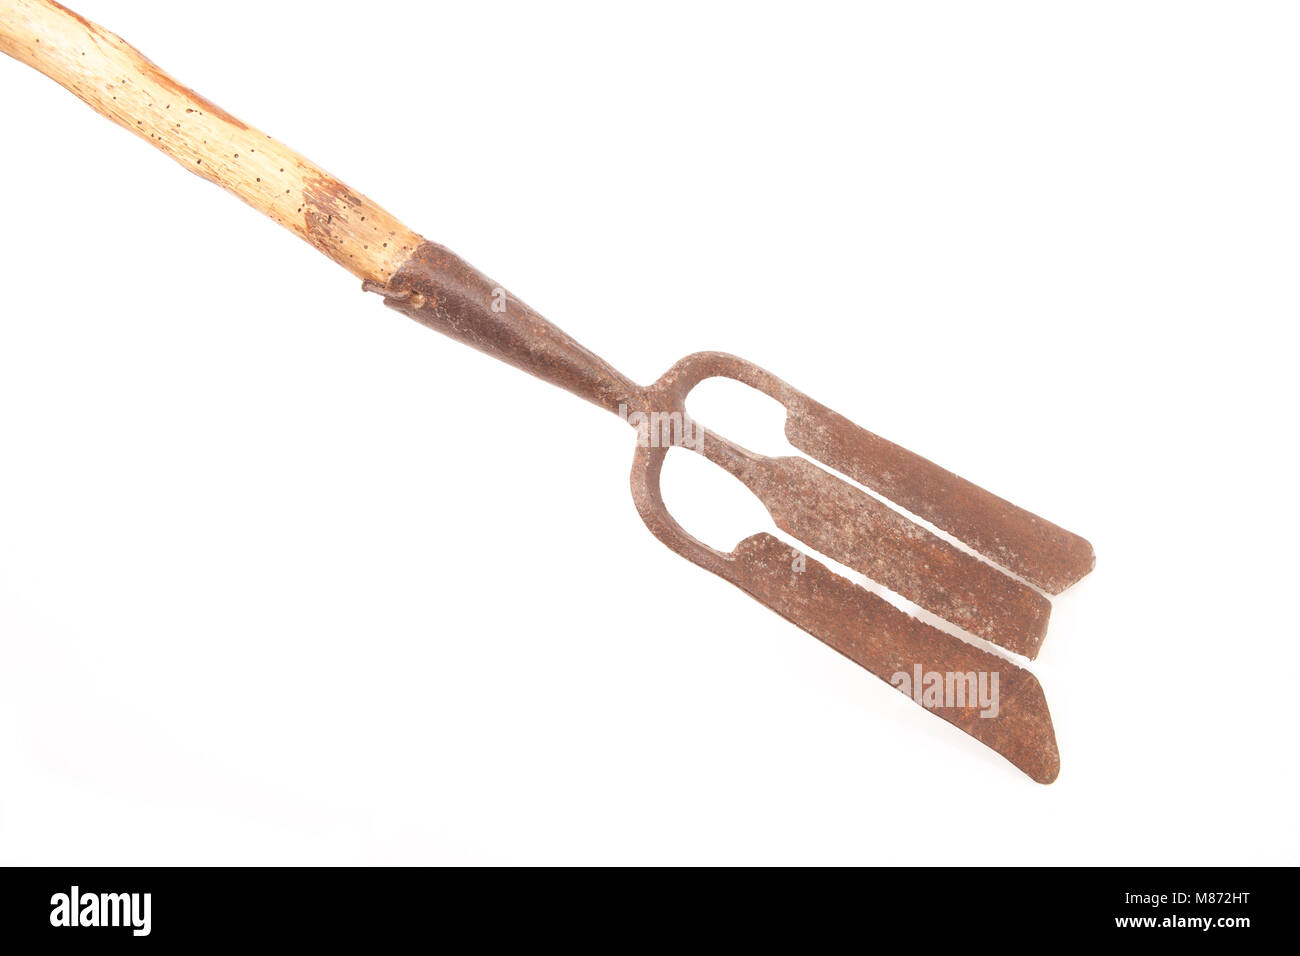 Une vieille, une lance ou une anguille métal gleave, sur un fond blanc, Dorset UK. La lance a été mis sur la fin d'une longue perche et poussée dans le blocage de l'eau Banque D'Images